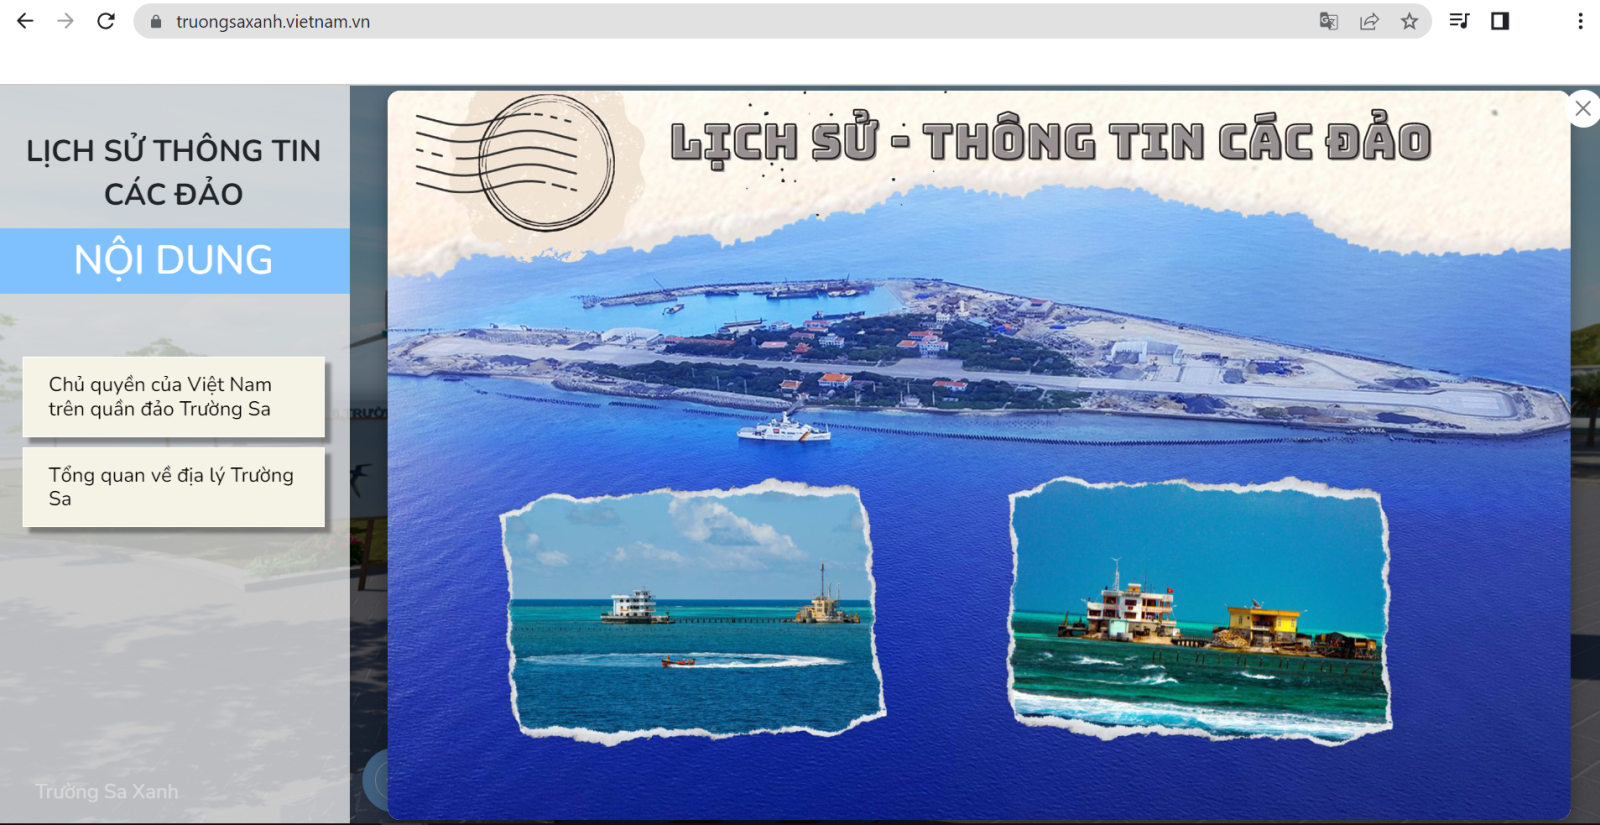 Triển lãm trực tuyến "Trường Sa xanh" để phục vụ công tác thông tin đối ngoại về biển, đảo Việt Nam